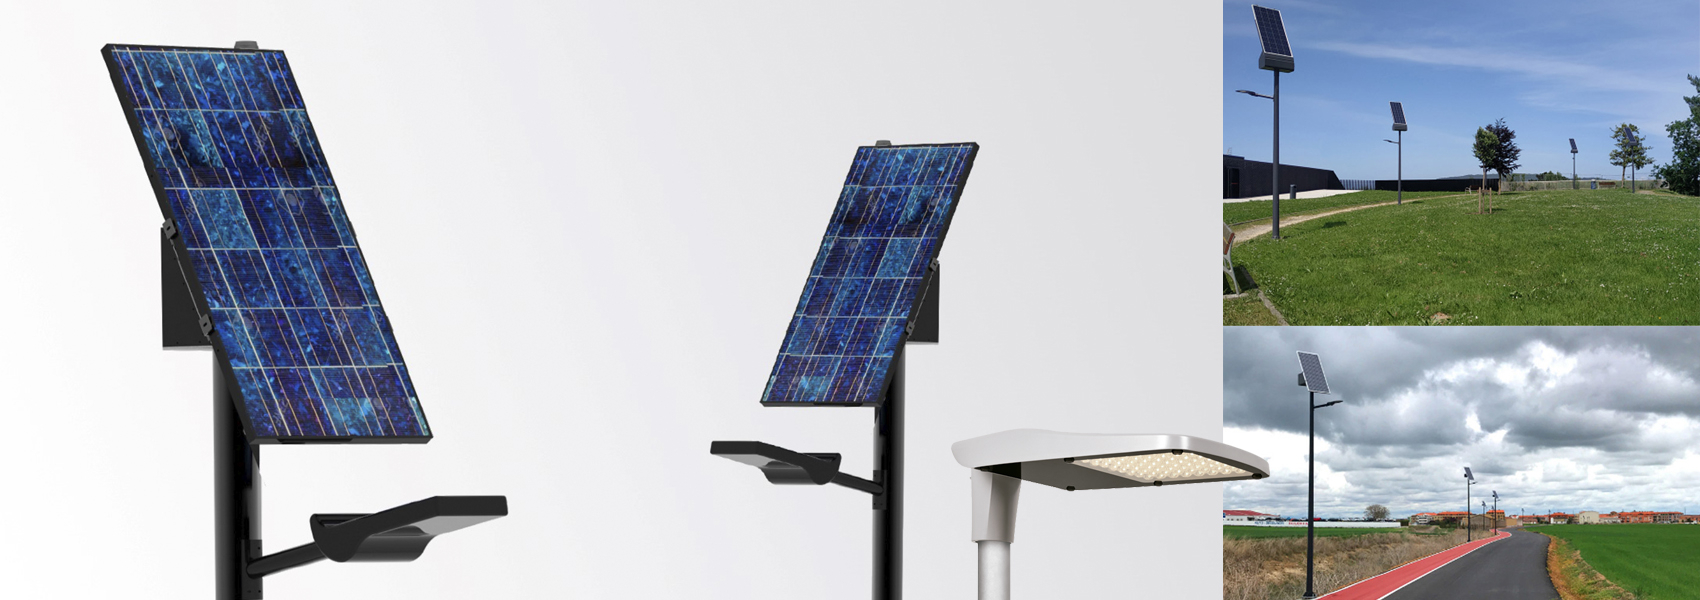 PUNT DE LLUM SOLAR Punt de llum fotovoltaic. Consta d'un sistema d'apagada i encesa autònom.